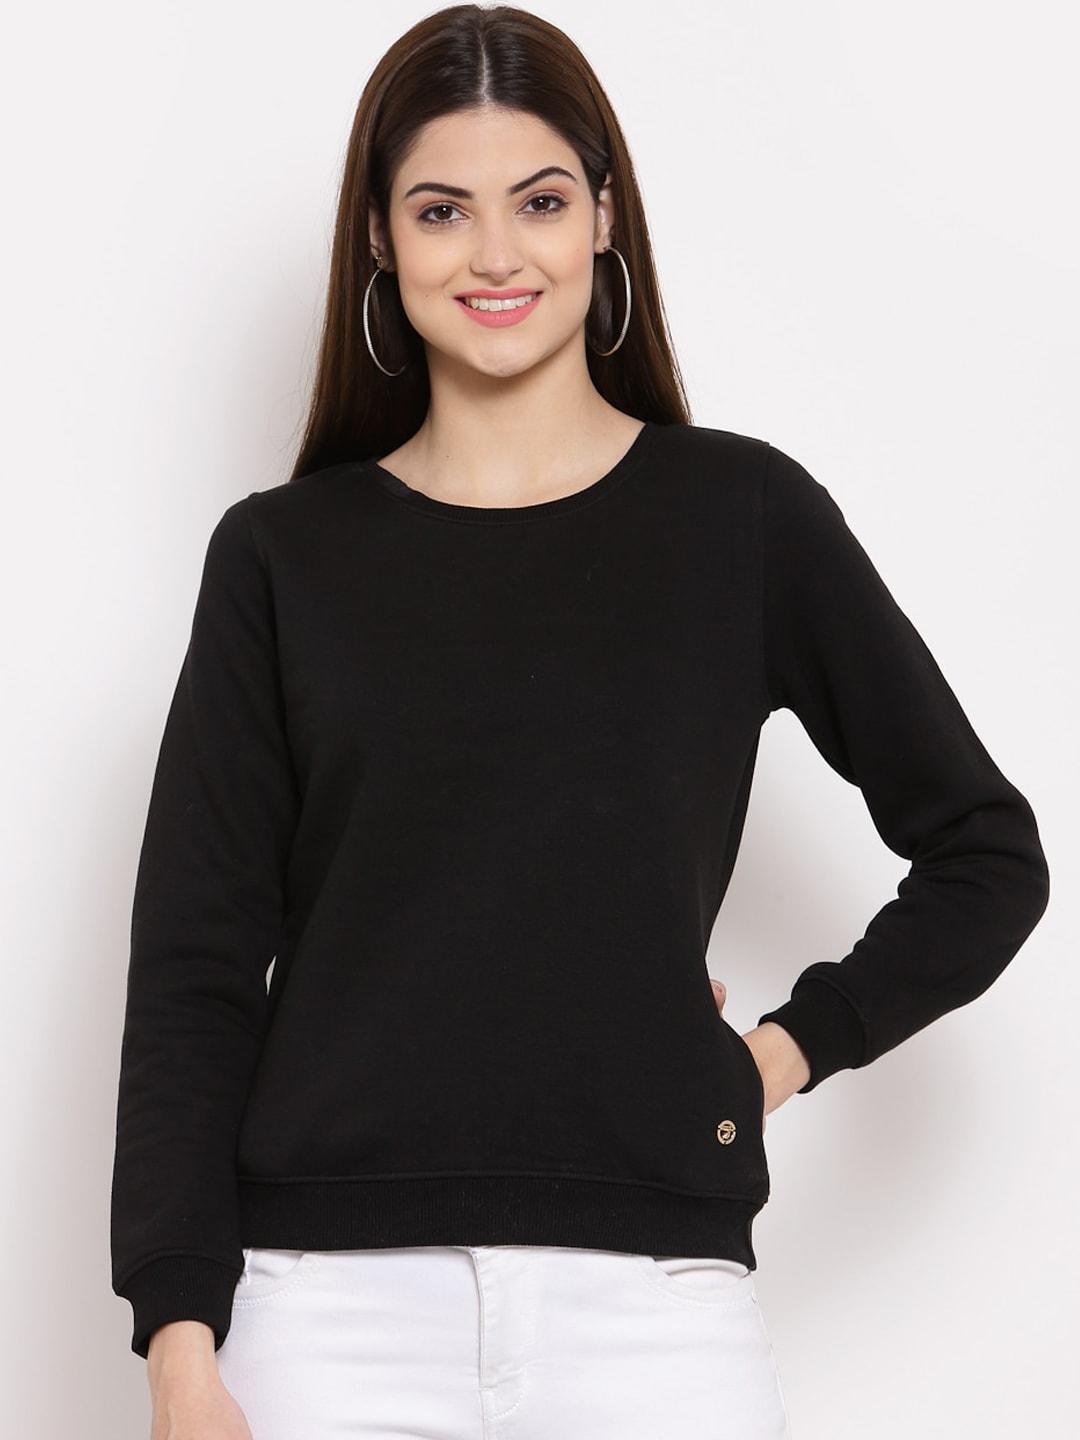 juelle-women-black-sweatshirt